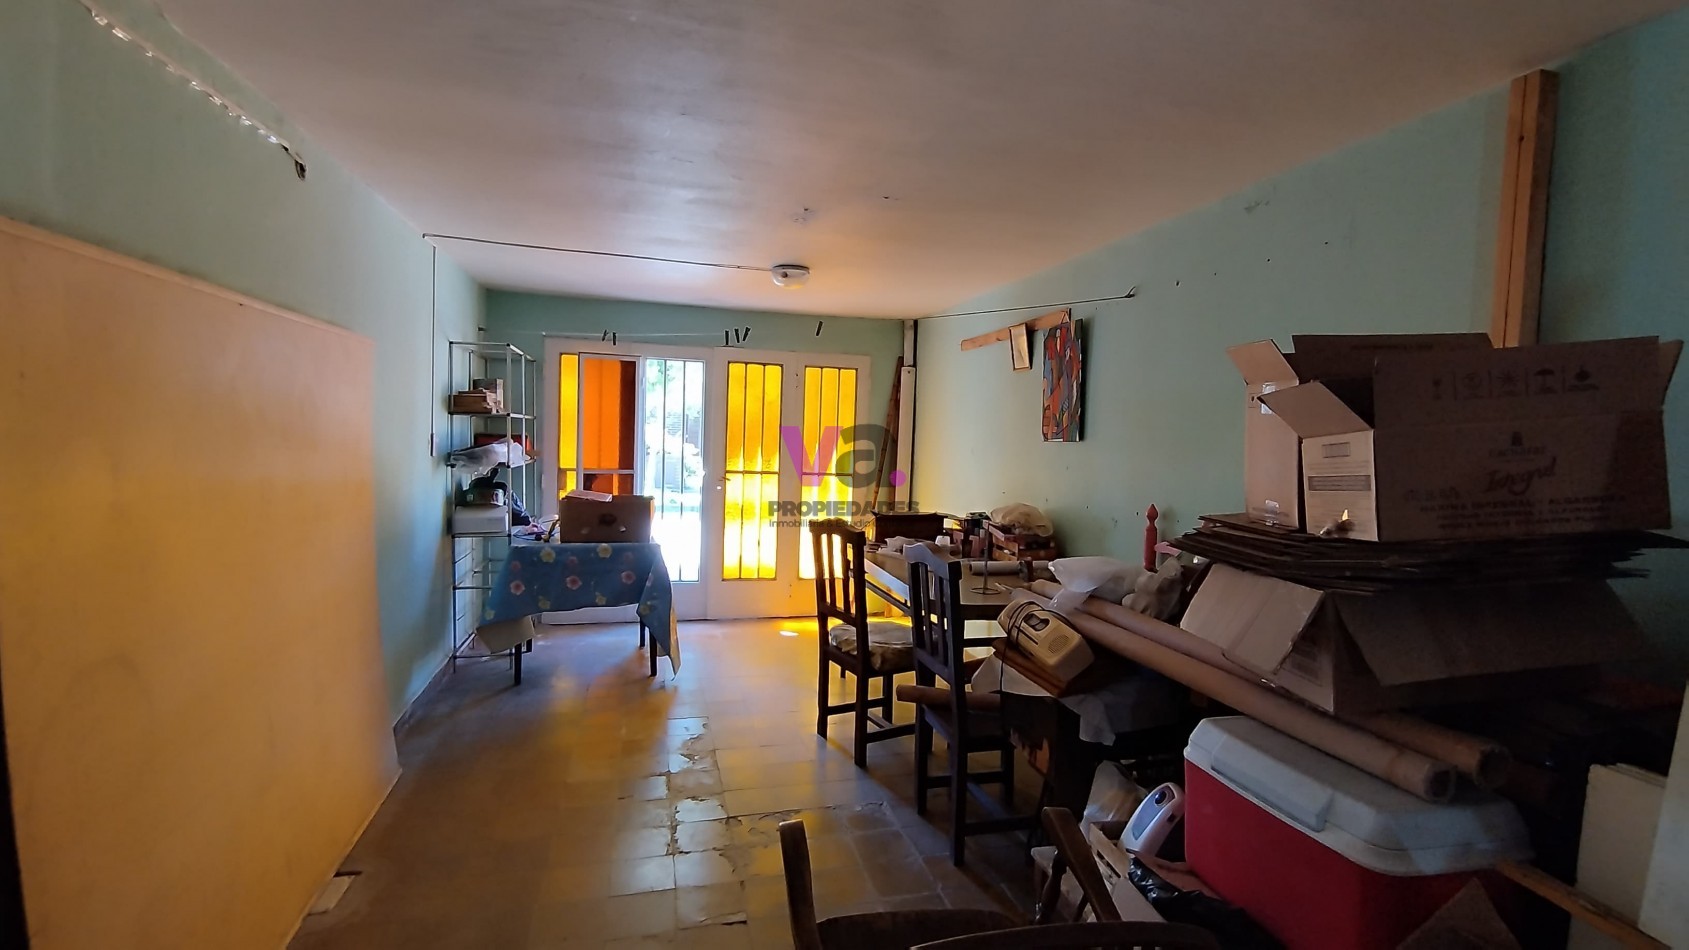 Villa cabrera, Oportunidad sobre Baracaldo , 3 dormitorios, 2 baños